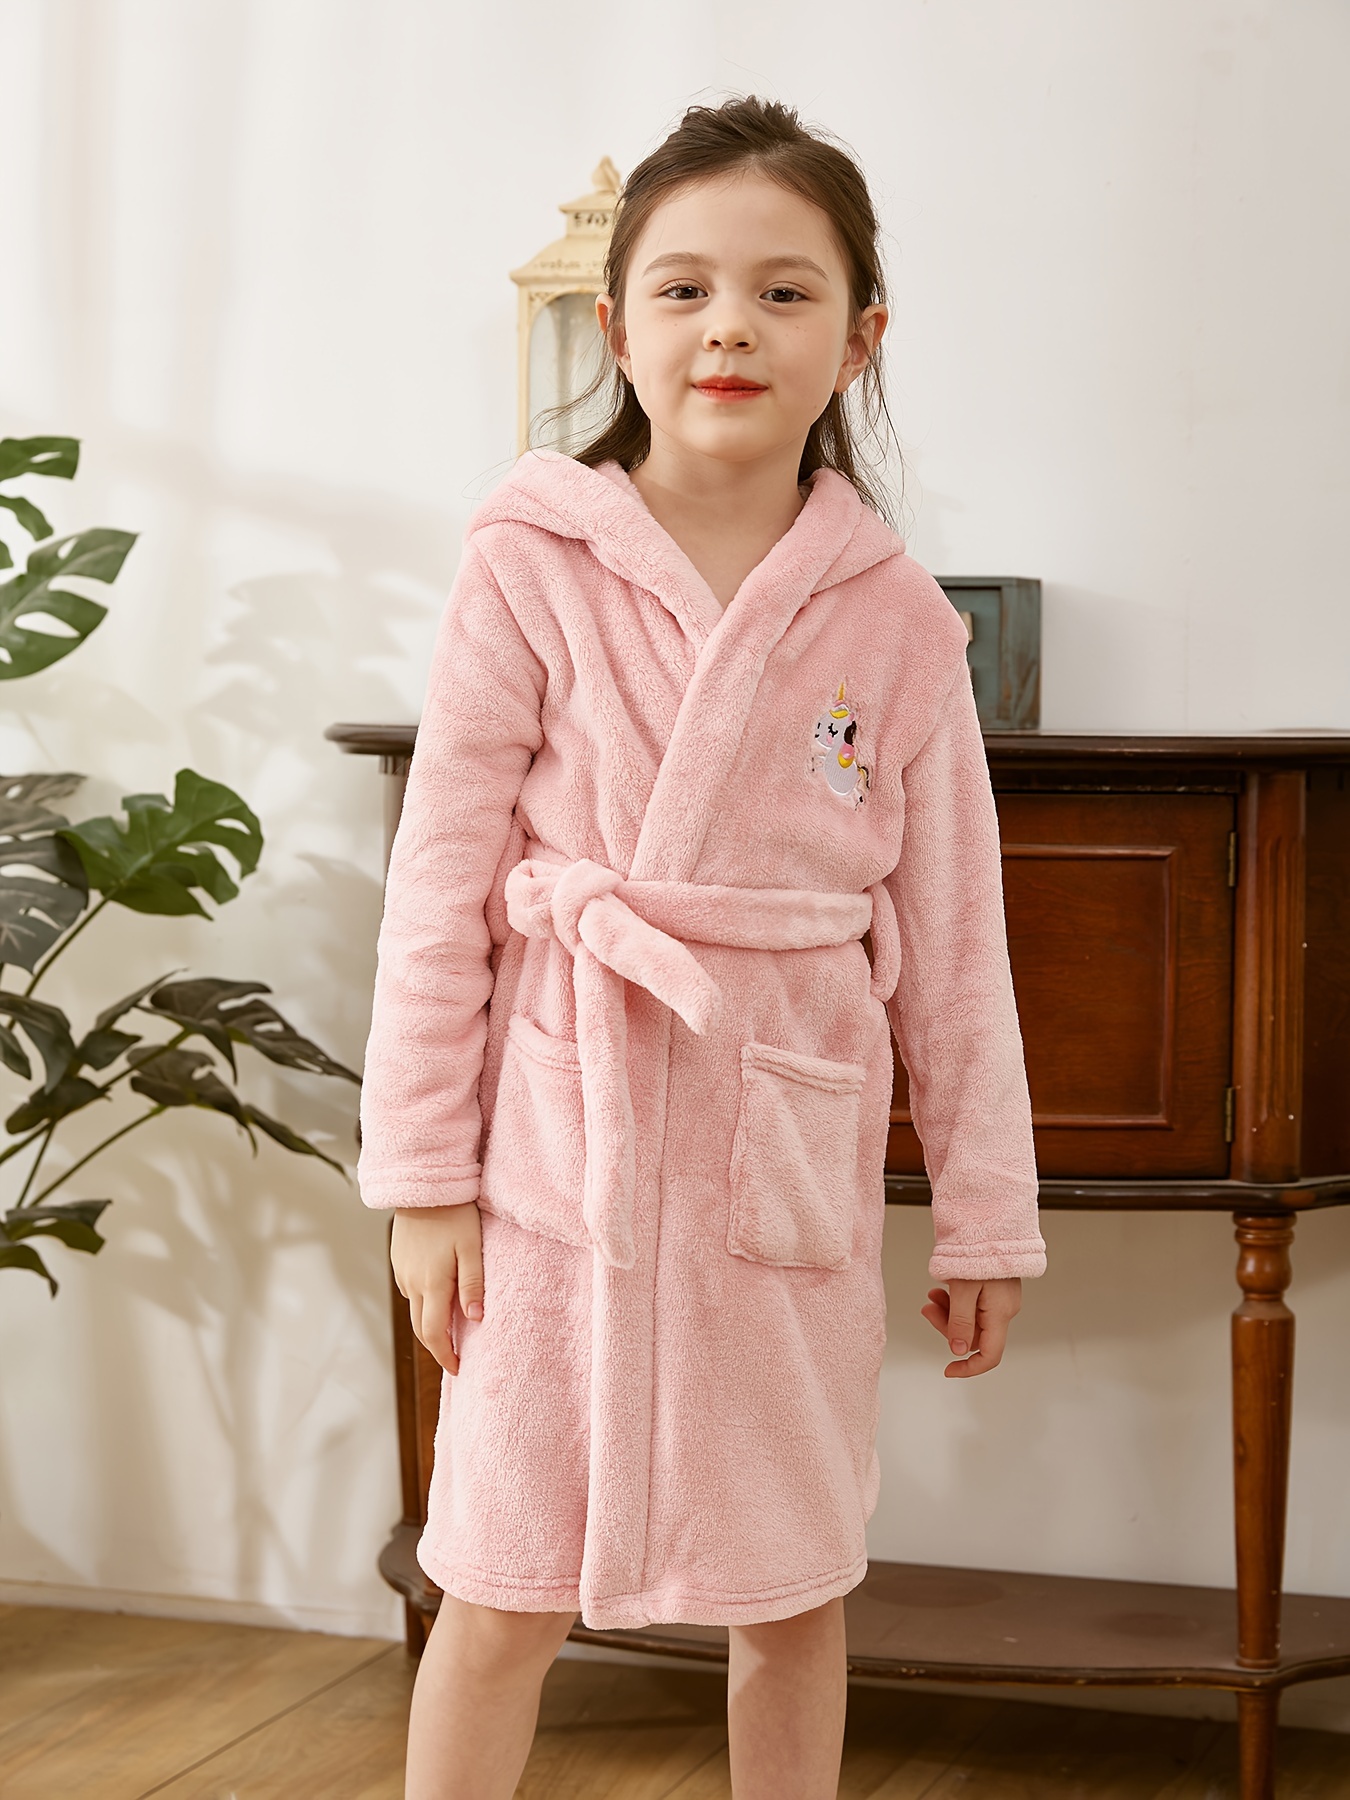 Lindo ratón bebé baño batas con capucha niños toalla pijamas ropa traje  albornoz (S)